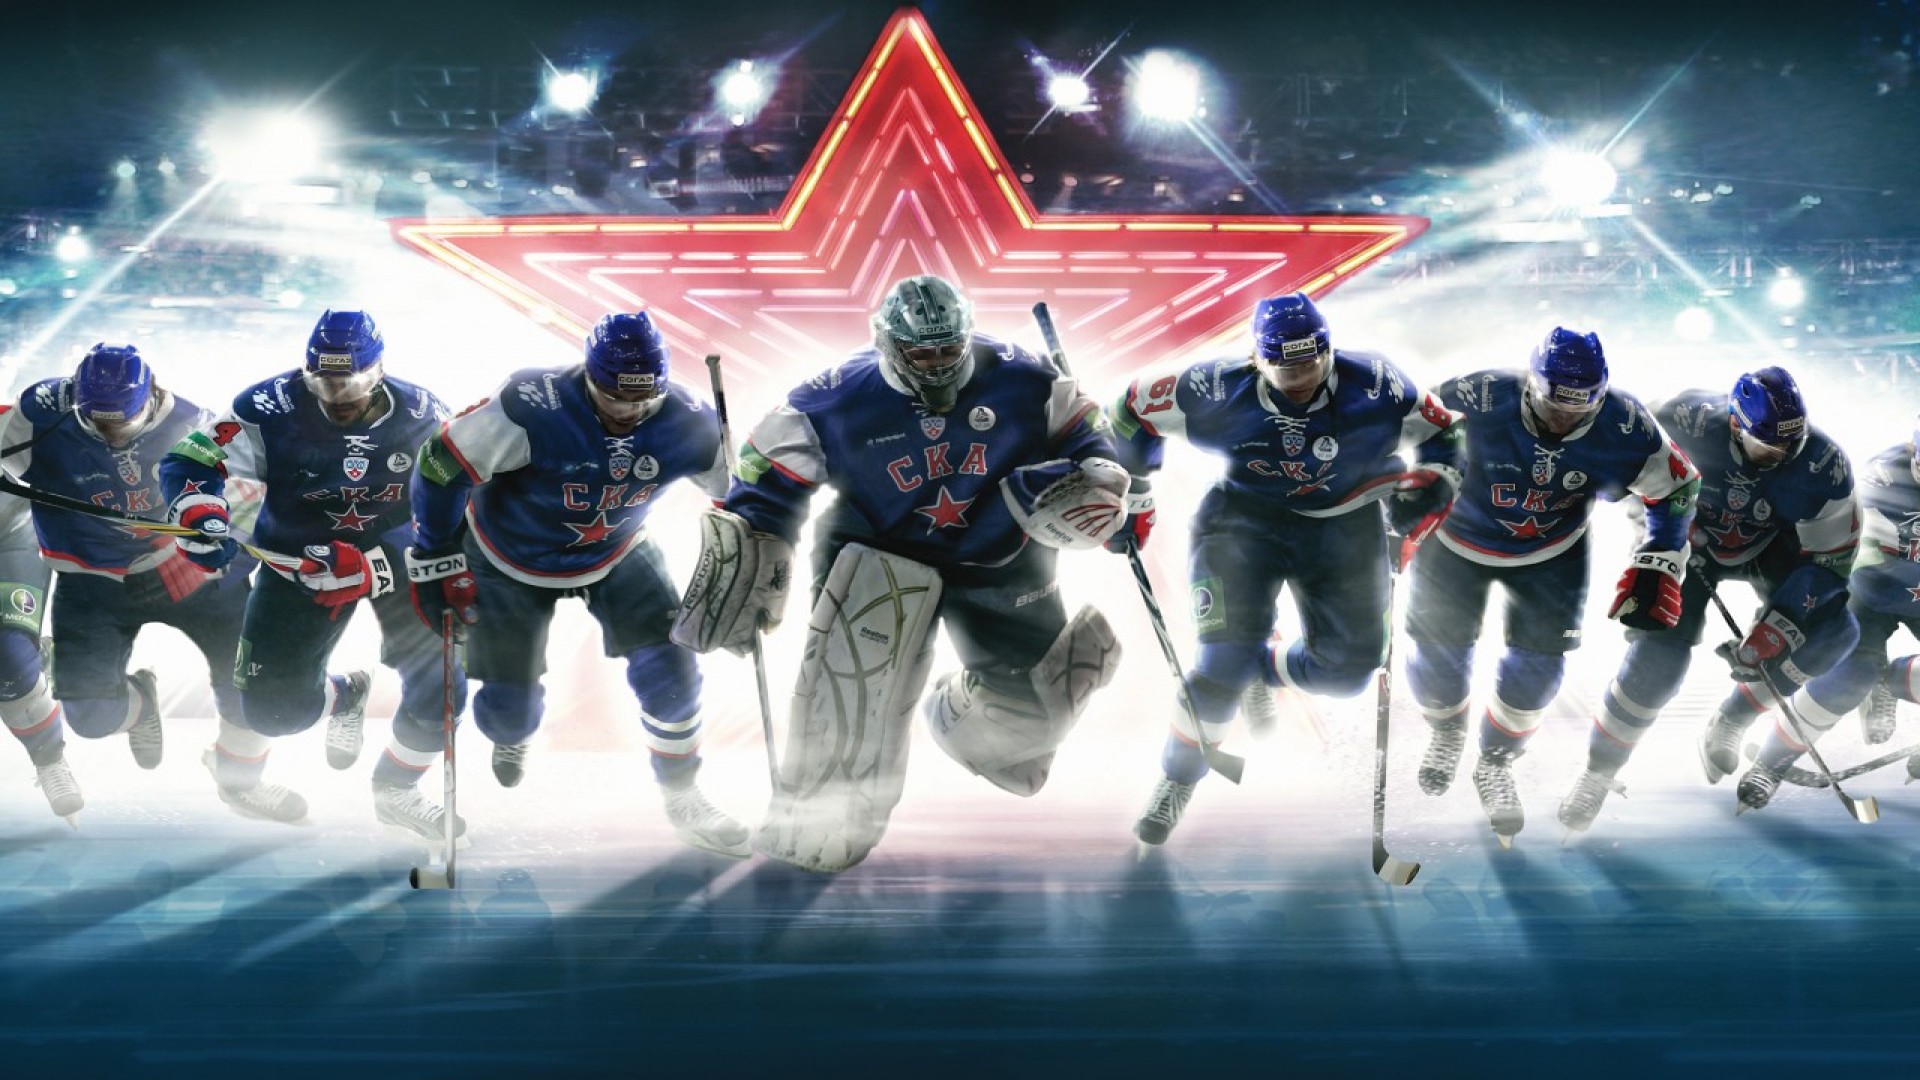 Descarga gratuita de fondo de pantalla para móvil de Hockey, Deporte.